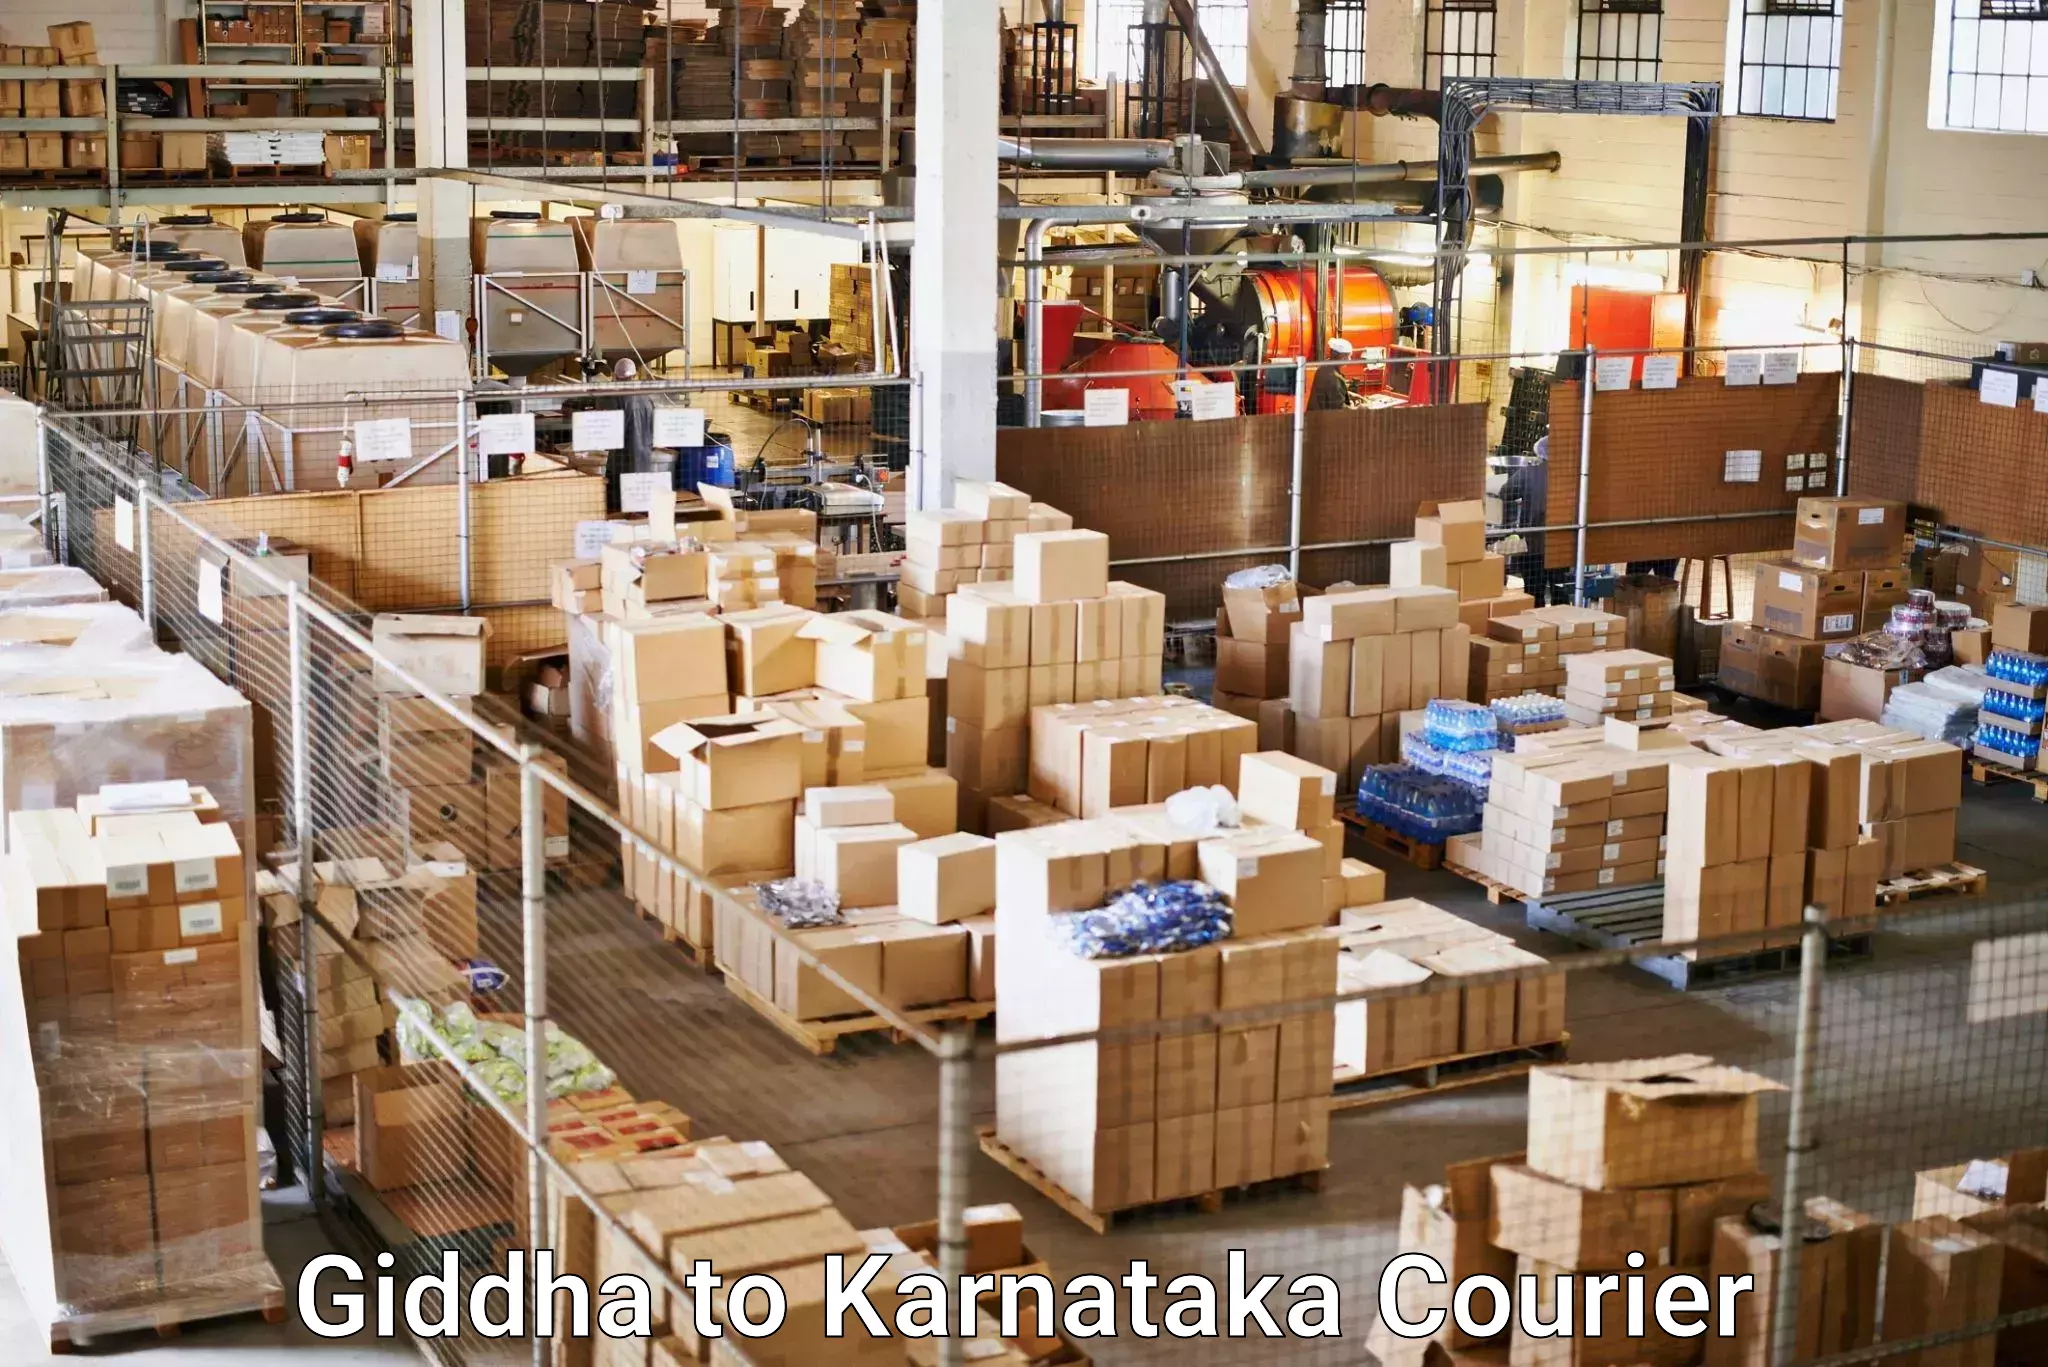 Shipping and handling Giddha to Karnataka